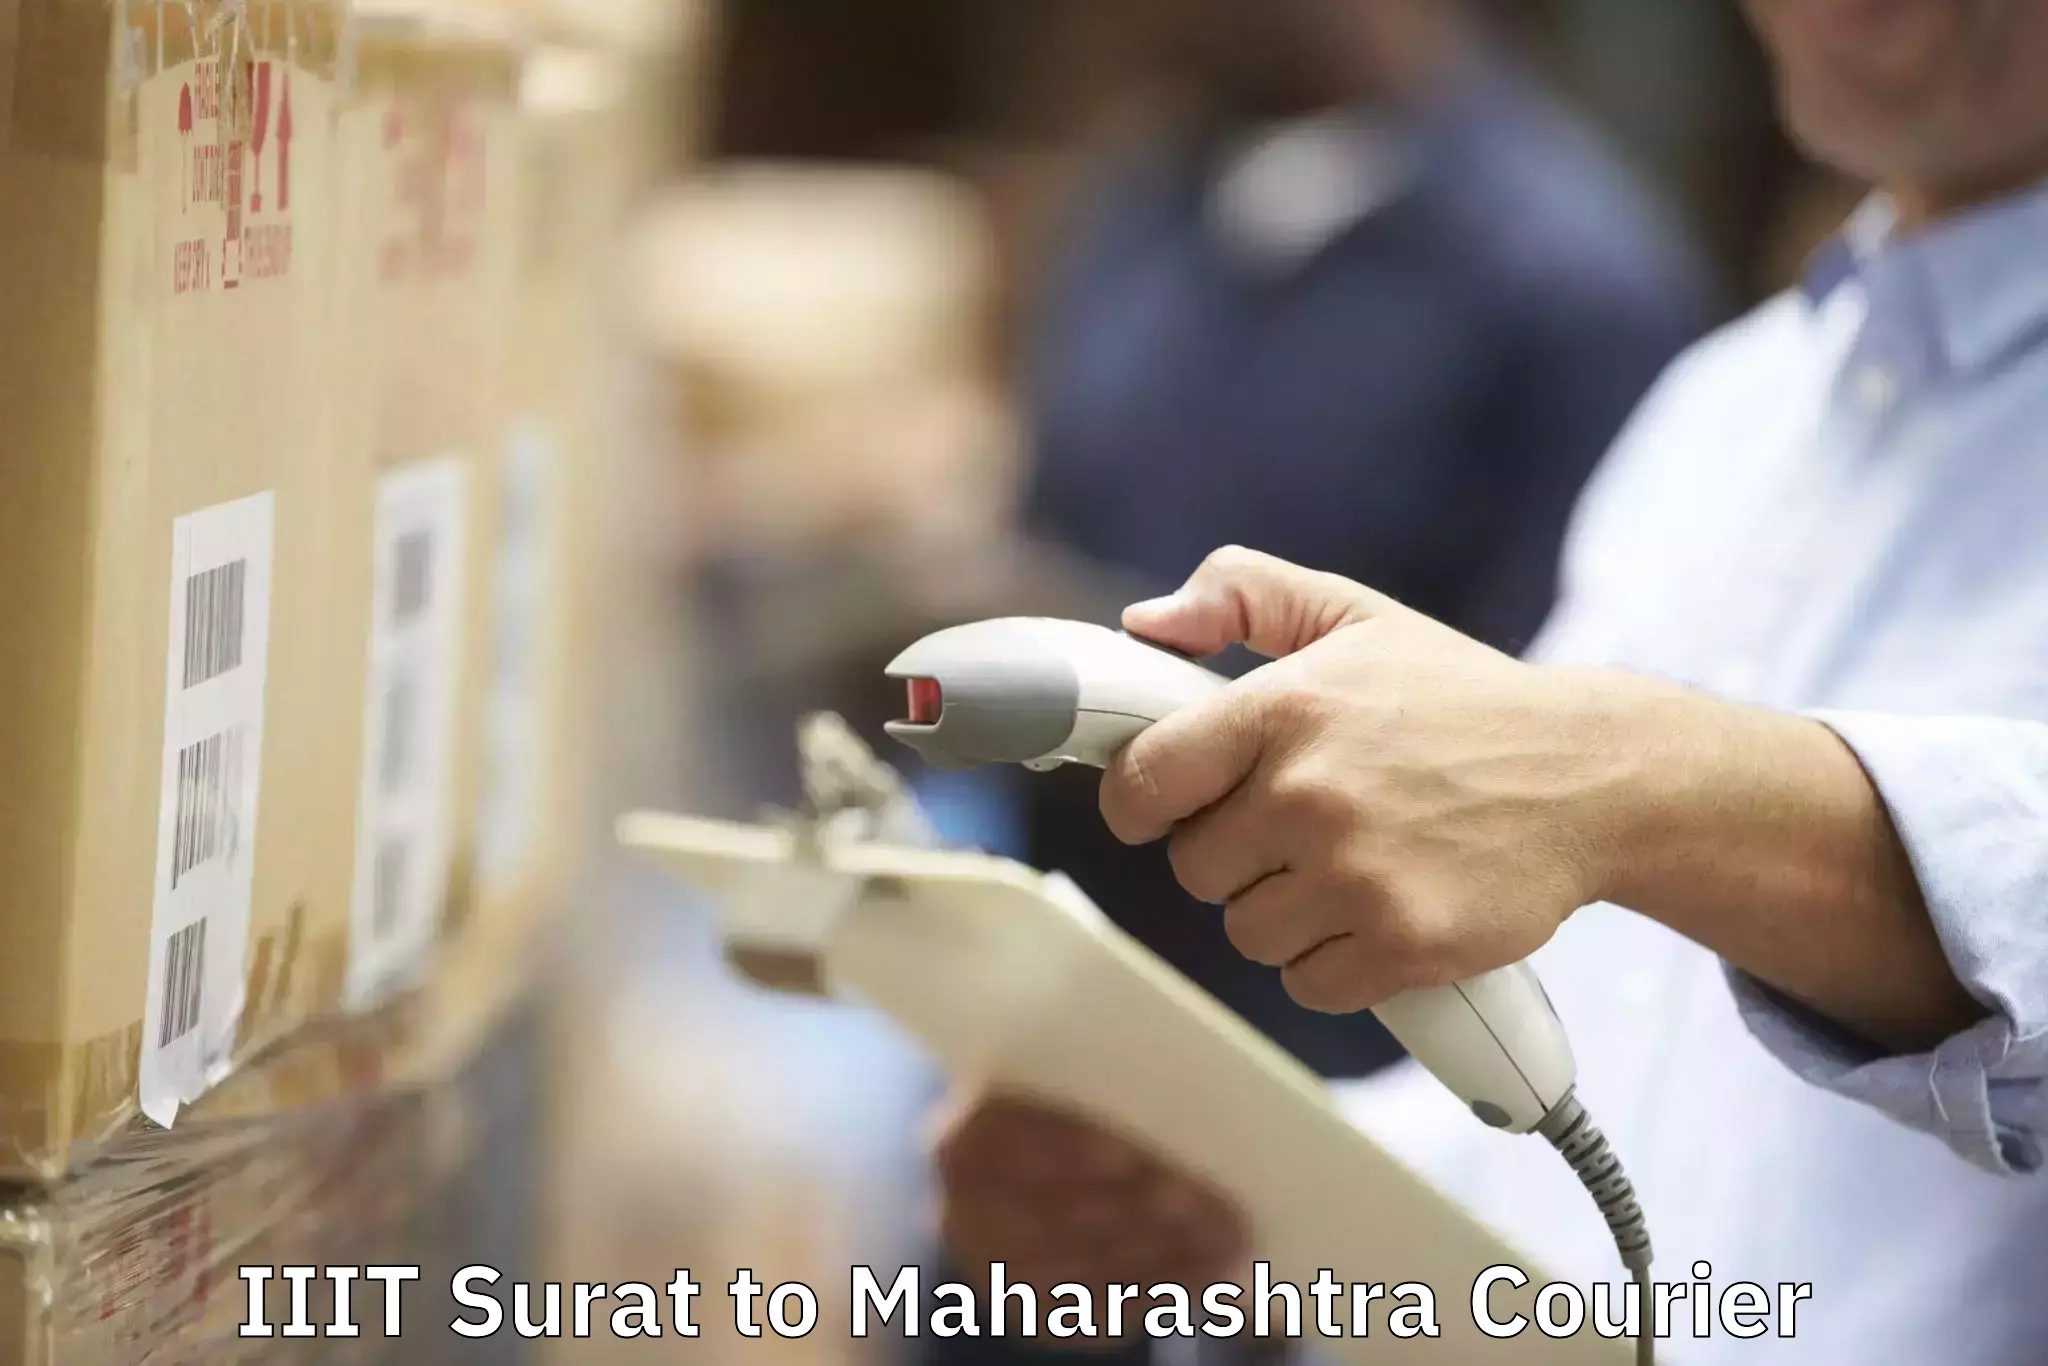 Home goods moving company IIIT Surat to Maharashtra